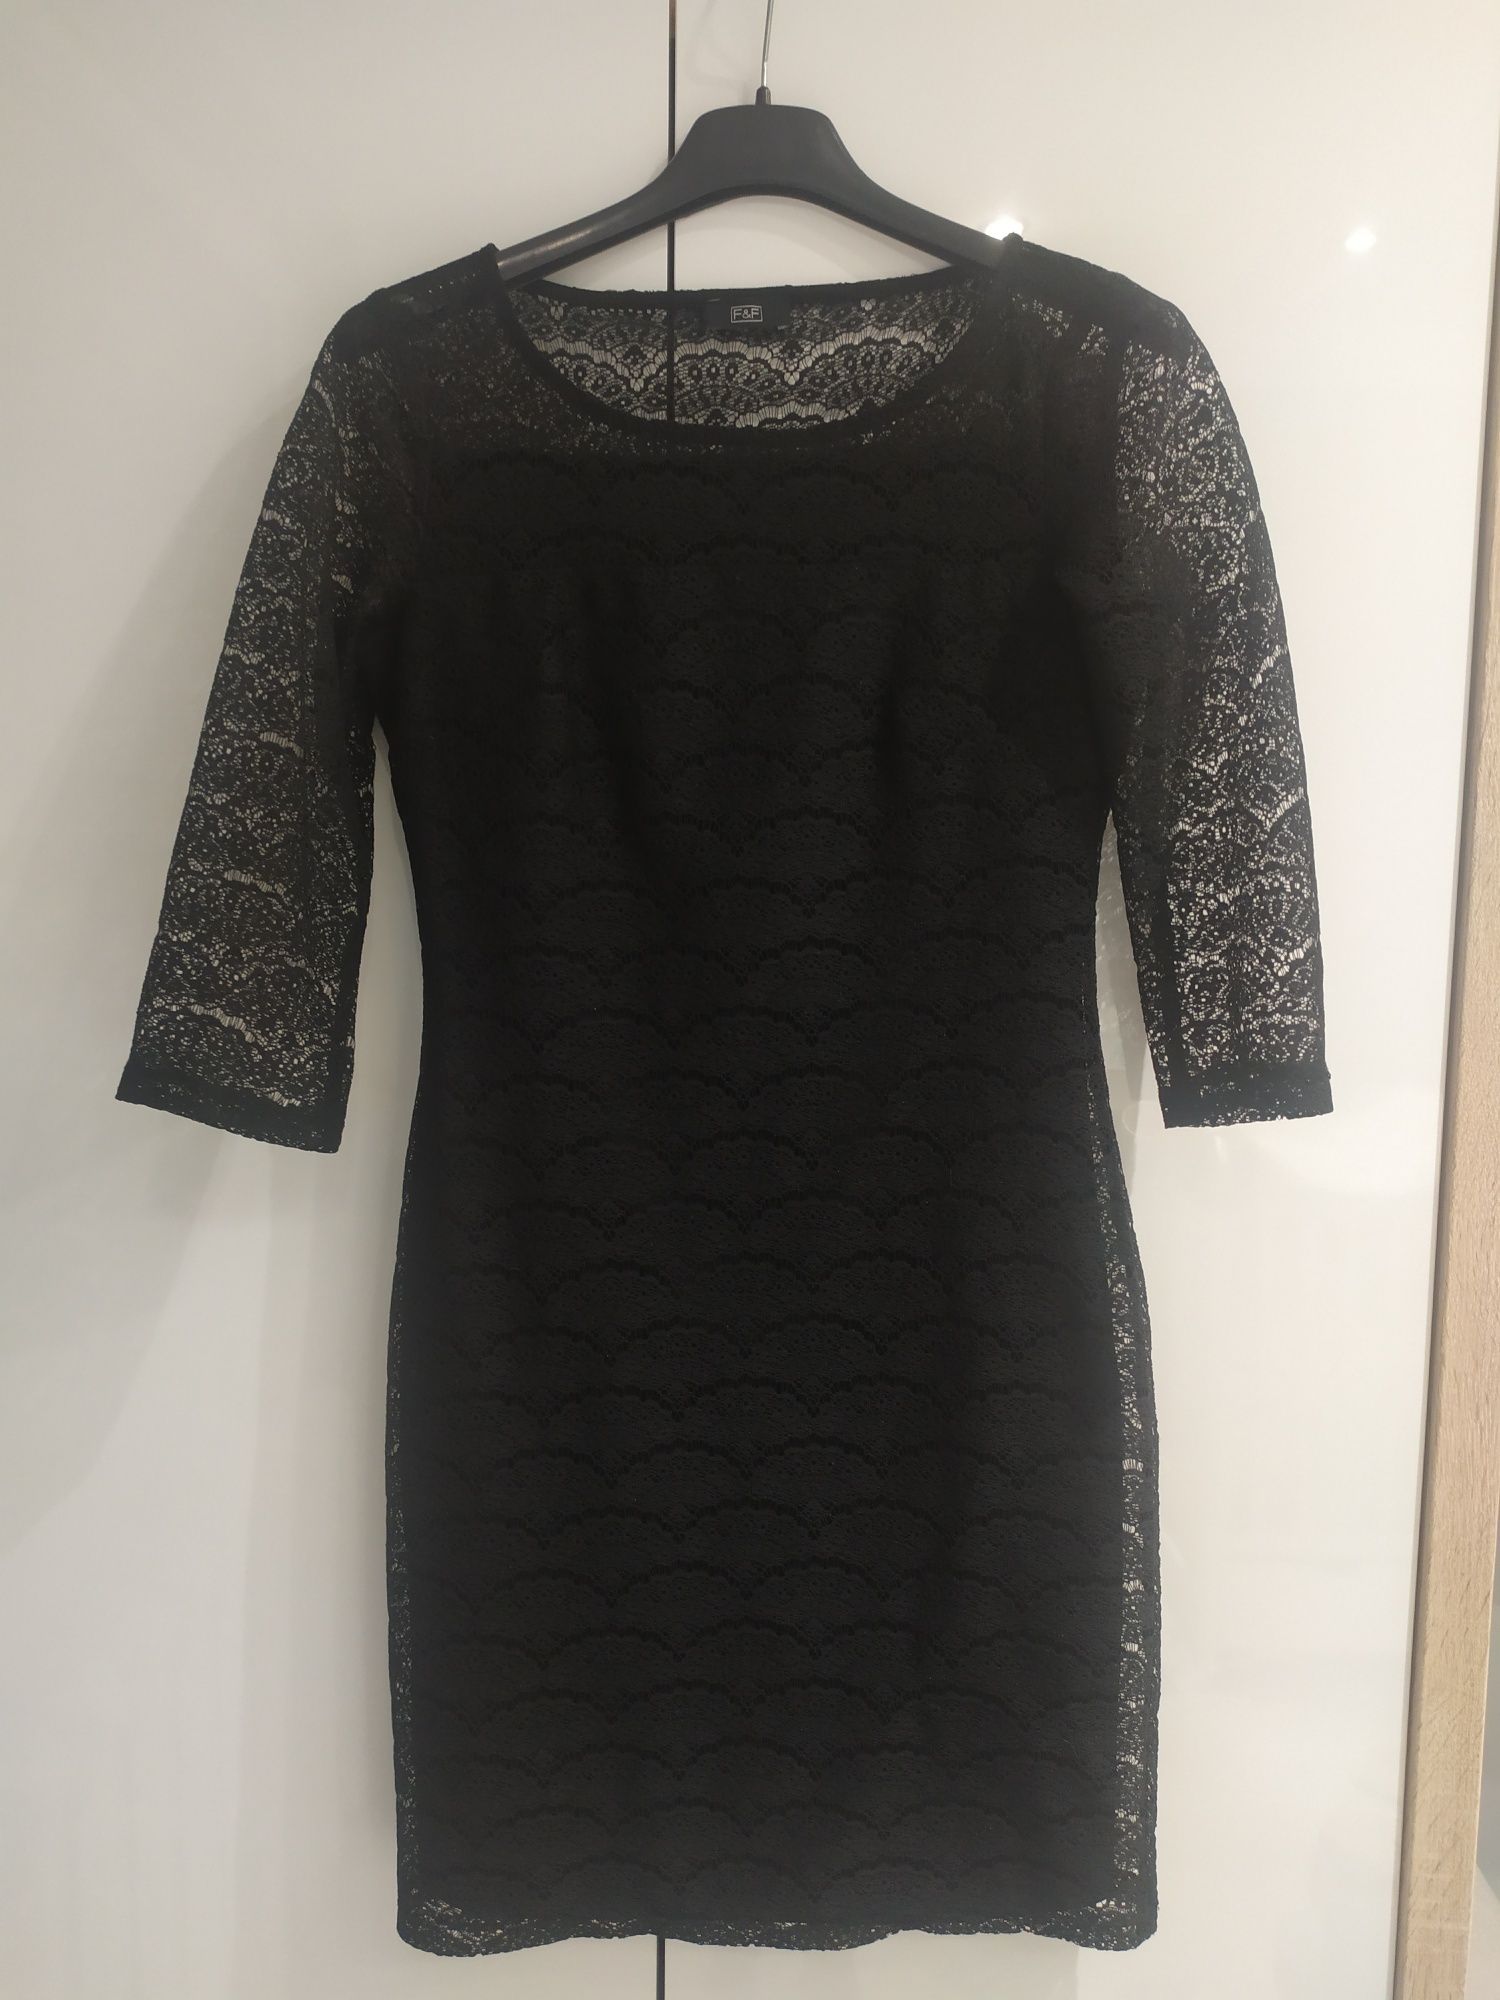 Mała czarna koronkowa sukienka F&F rozmiar 36